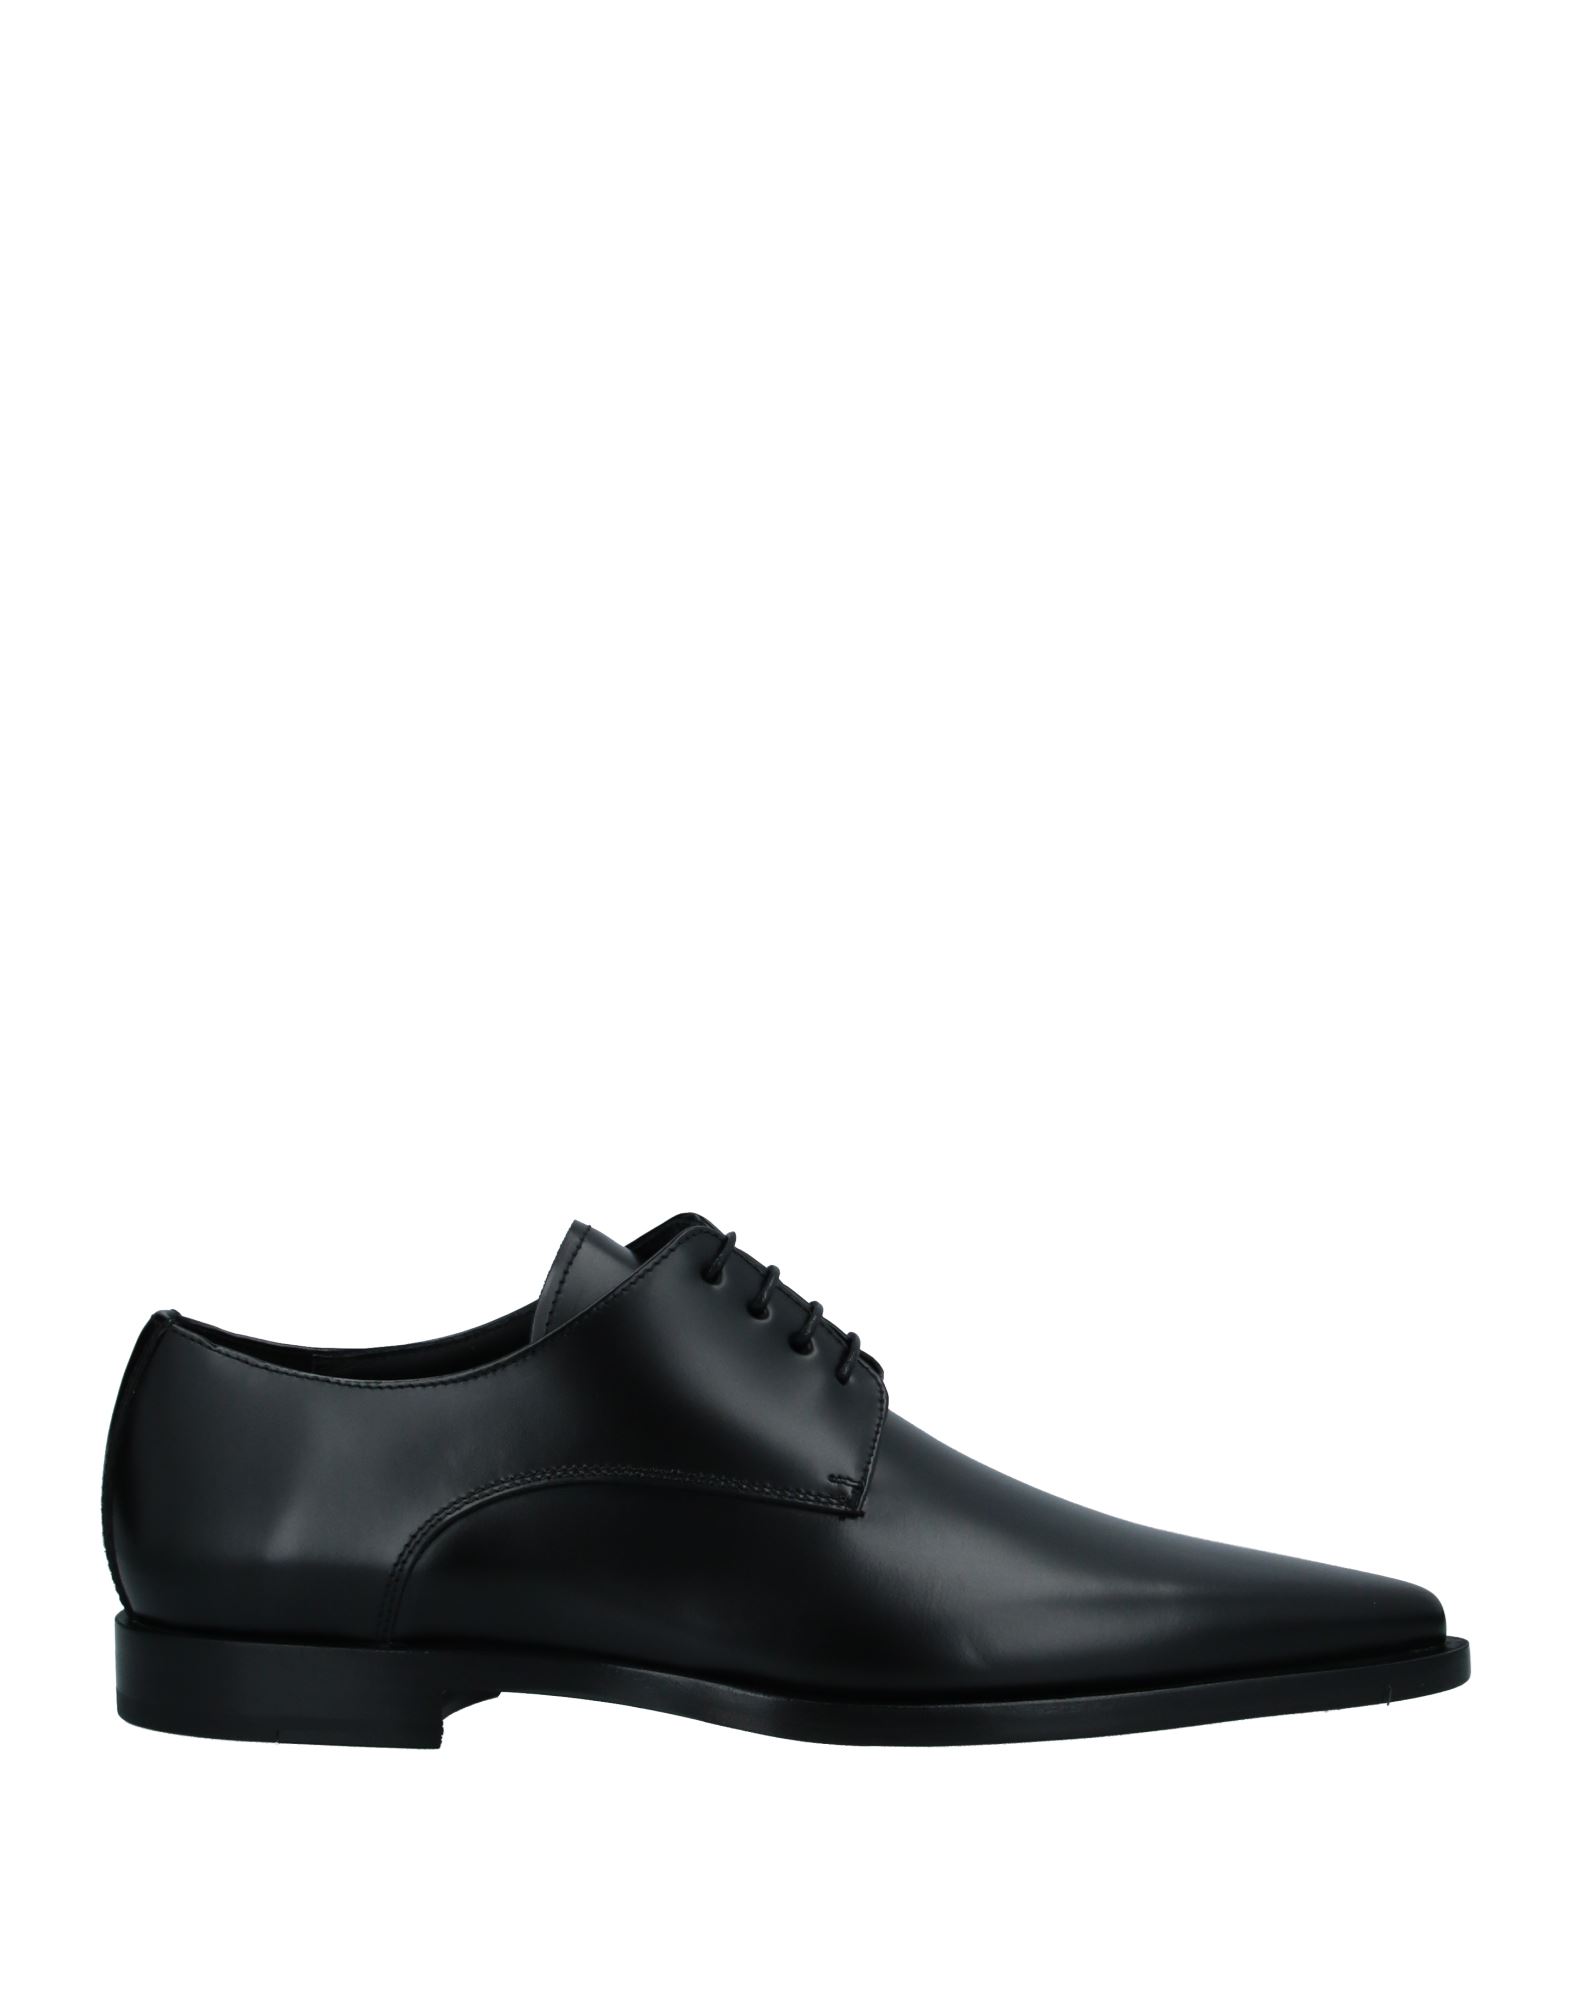 Shop Dsquared2 Man Lace-up Shoes Black Size 9 Soft Leather